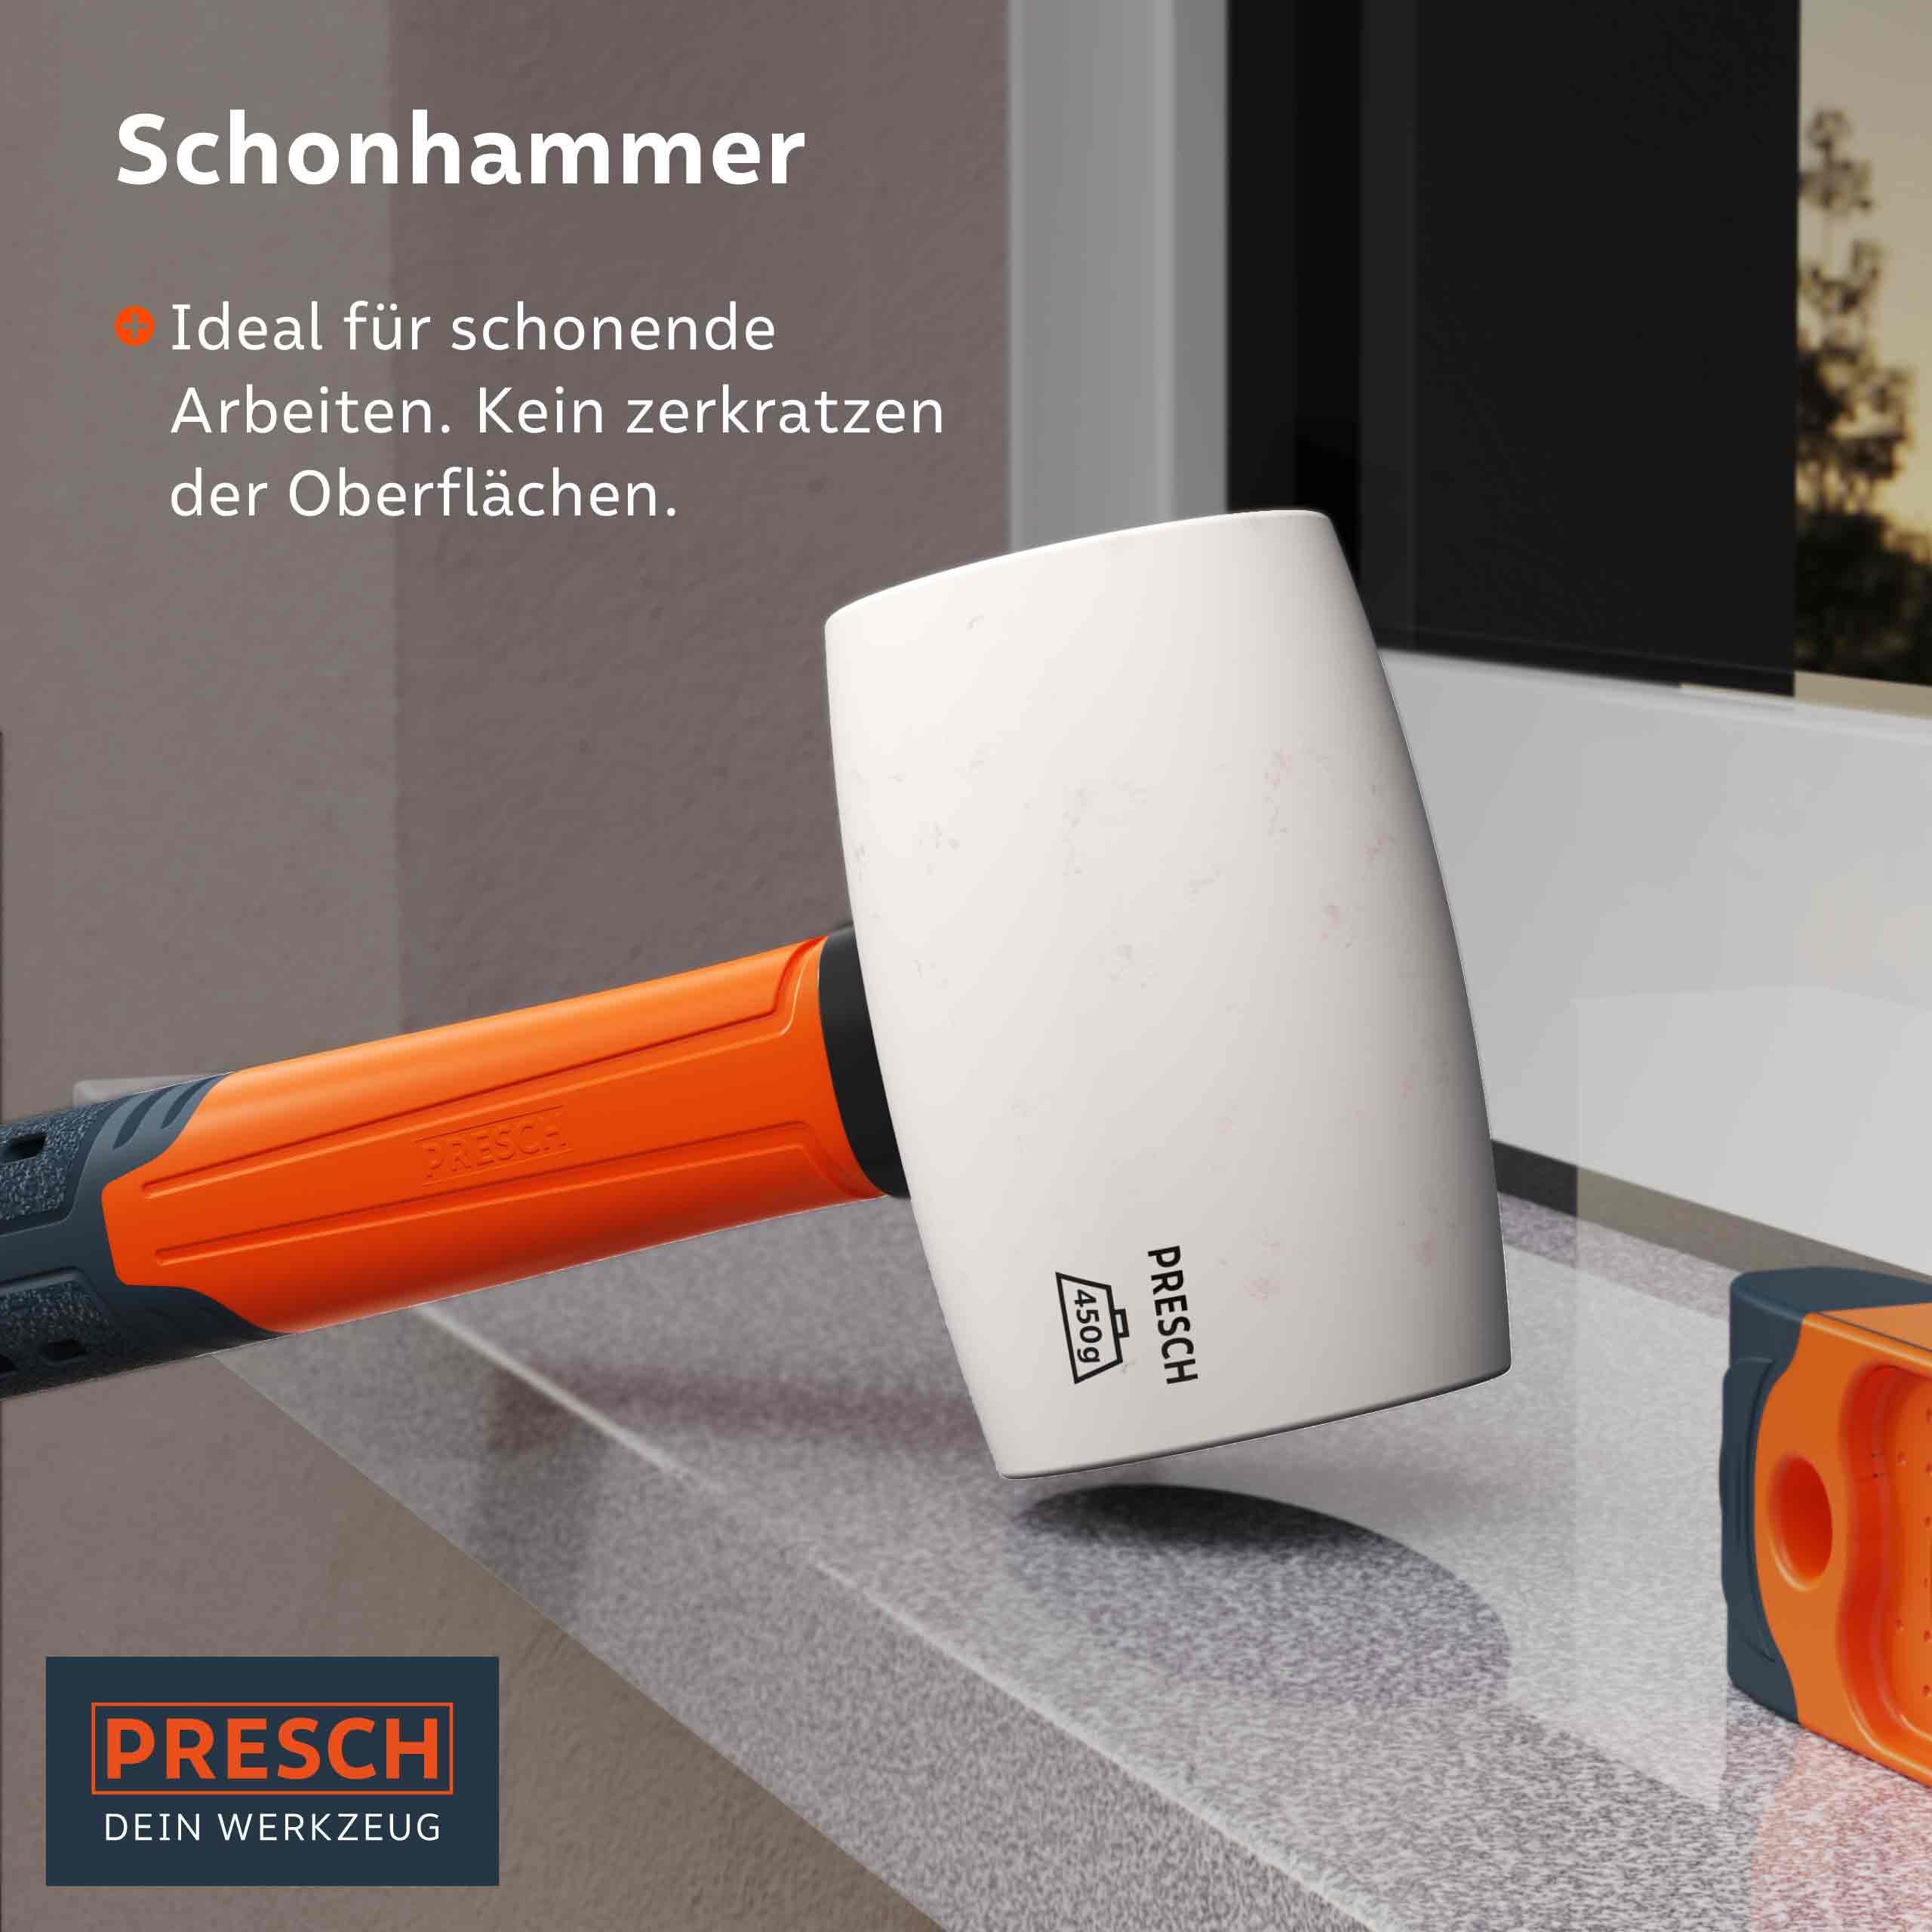 PRESCH Schonhammer für präzises und oberflächenschützendes Arbeiten, Gummischlägel und Kunststoffhammer.